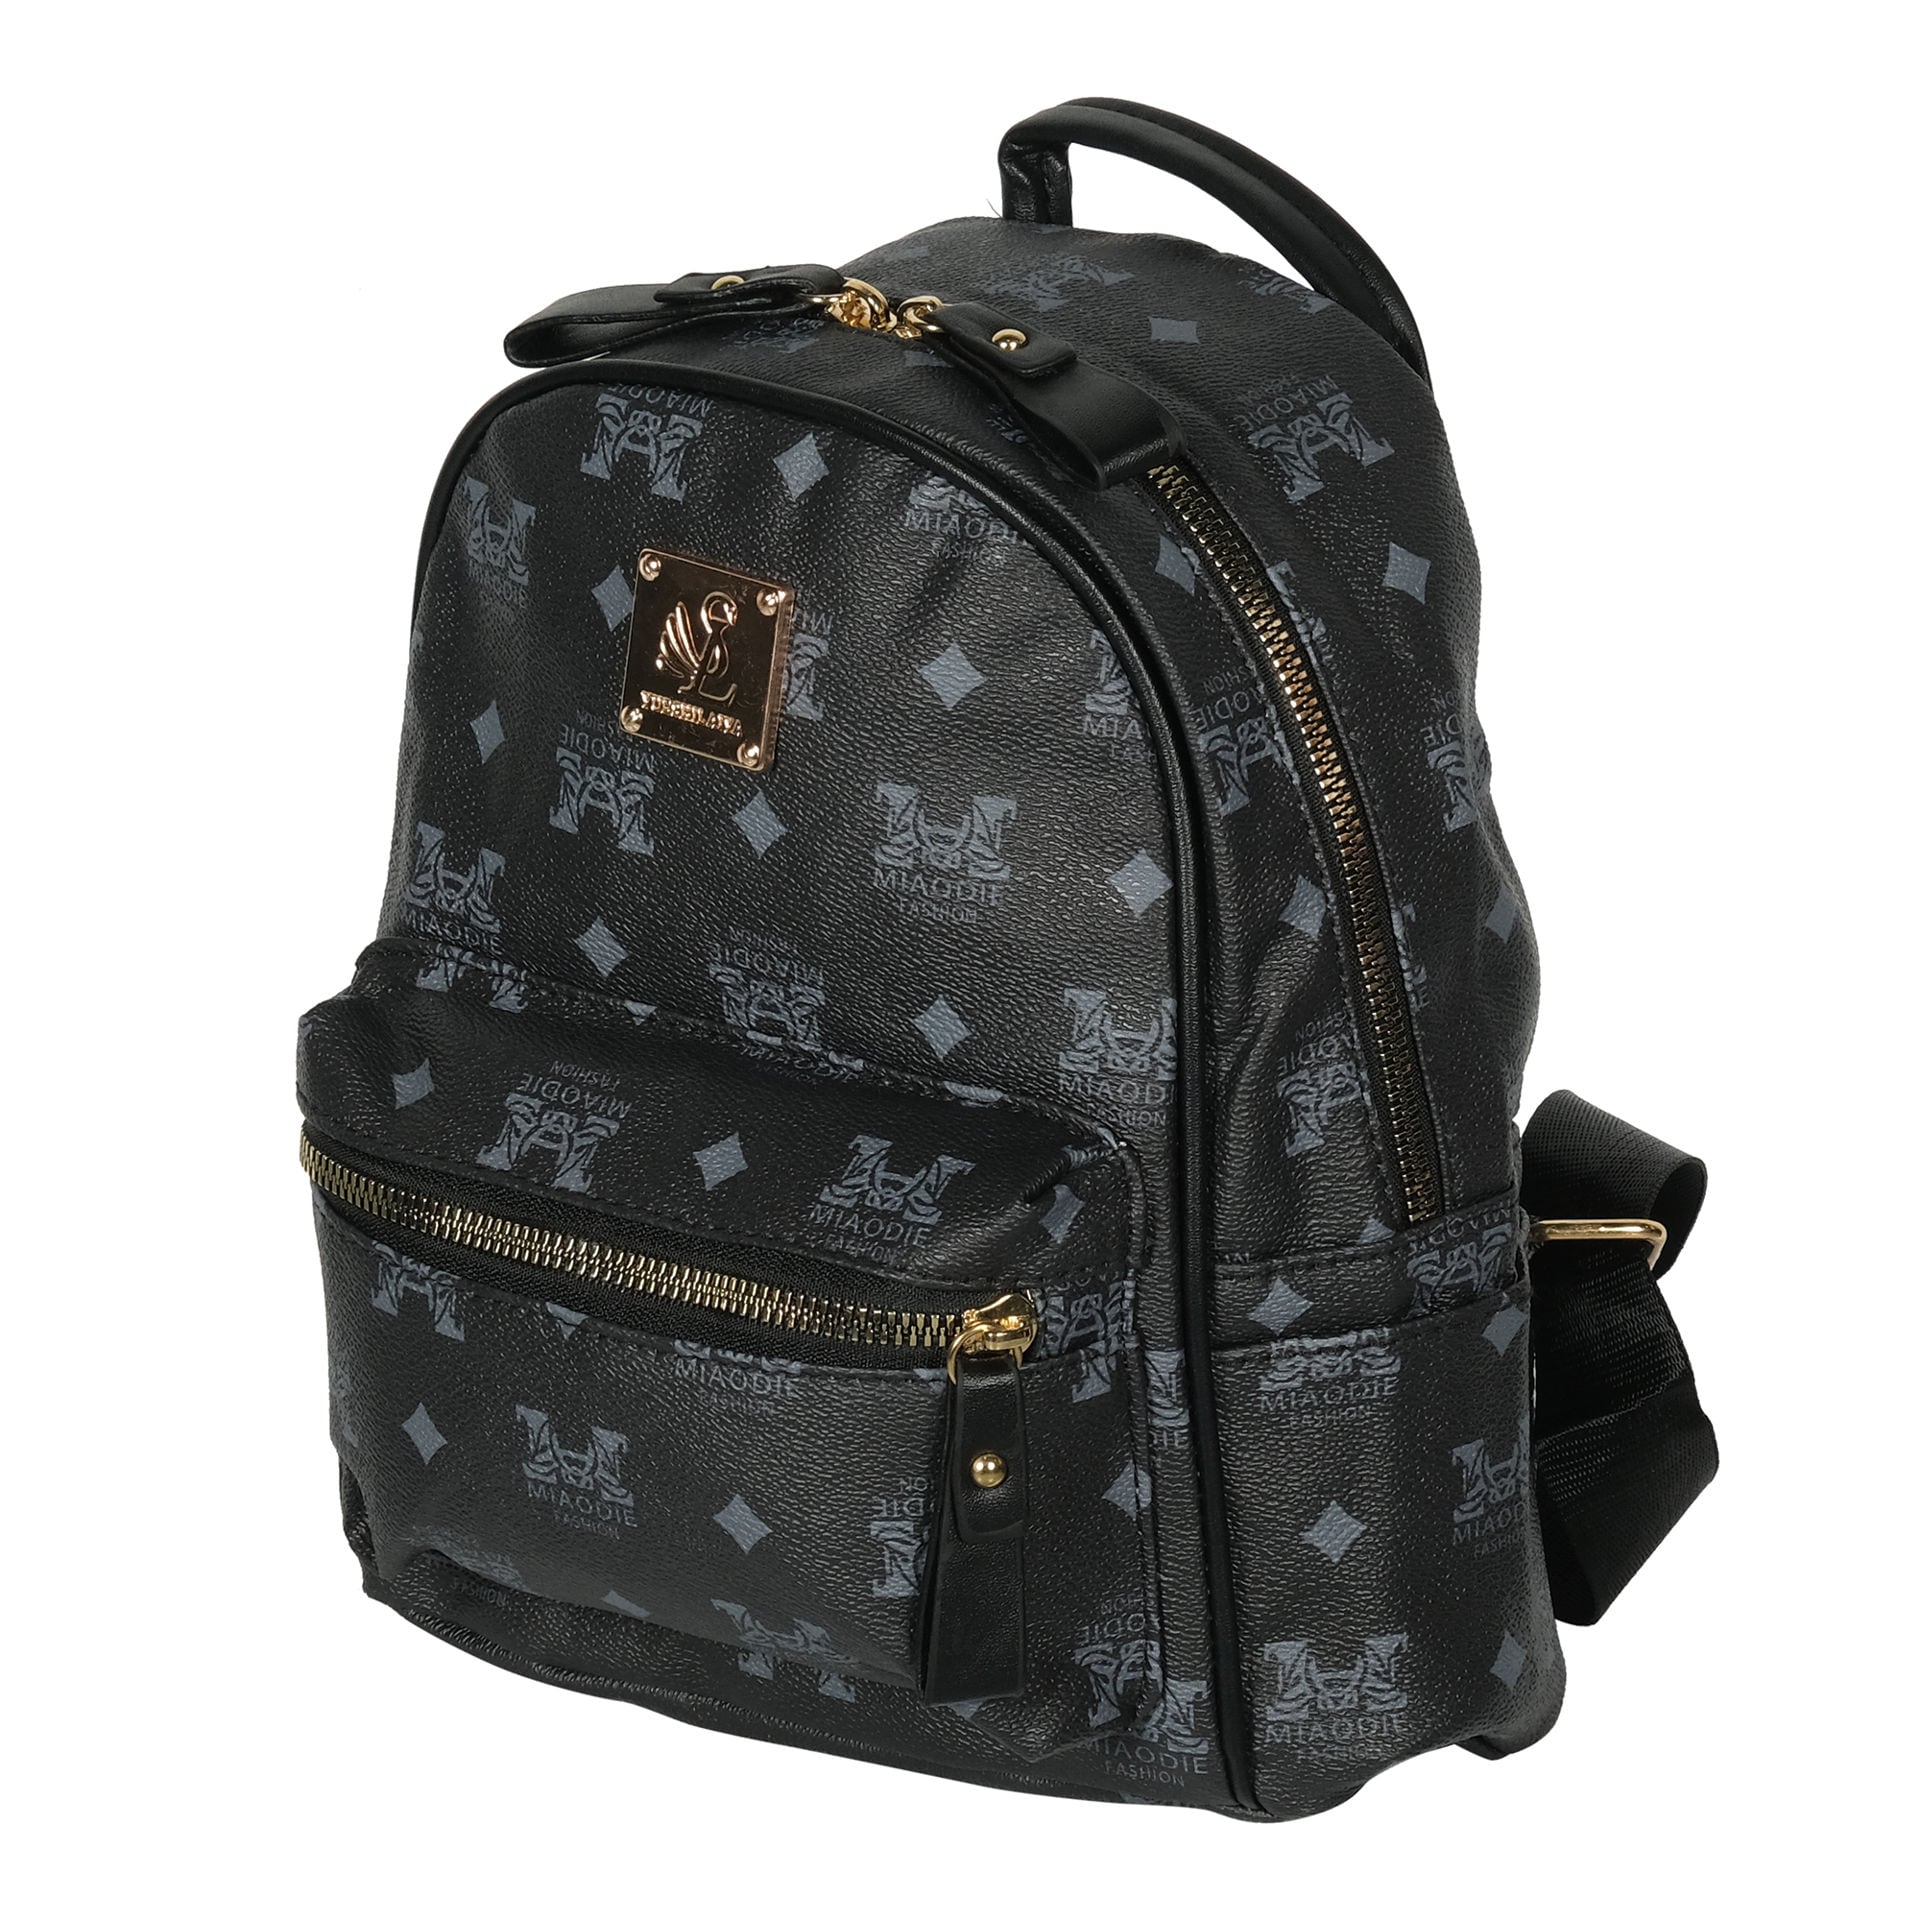 Buy Online Miaodie Printed Backpack with Zip Closure in UAE | Dragonmart.ae